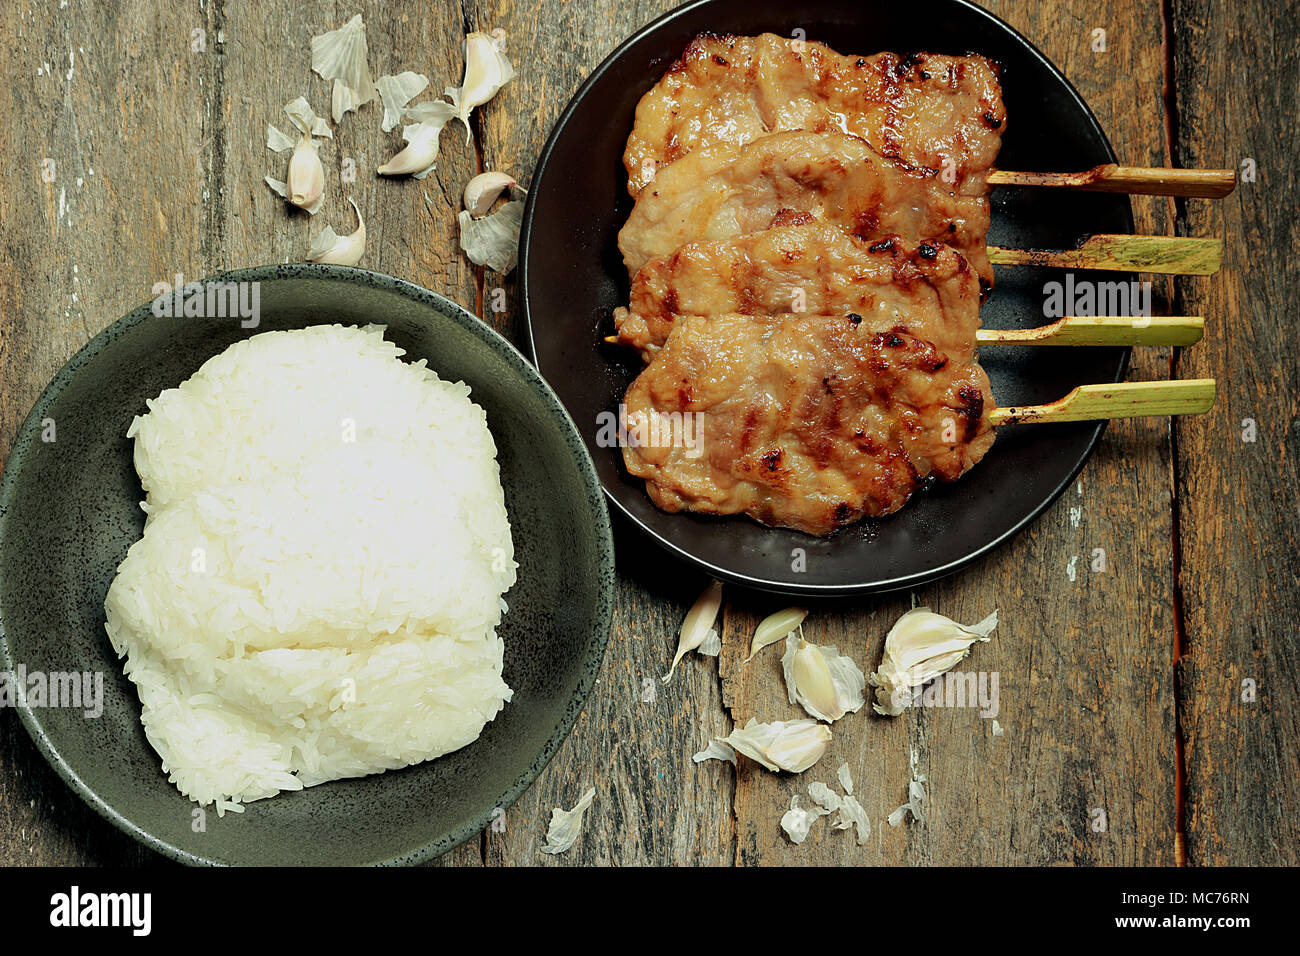 Dans cette photo, il y a de riz collant, le porc grillé. L'ail est un composant. Banque D'Images